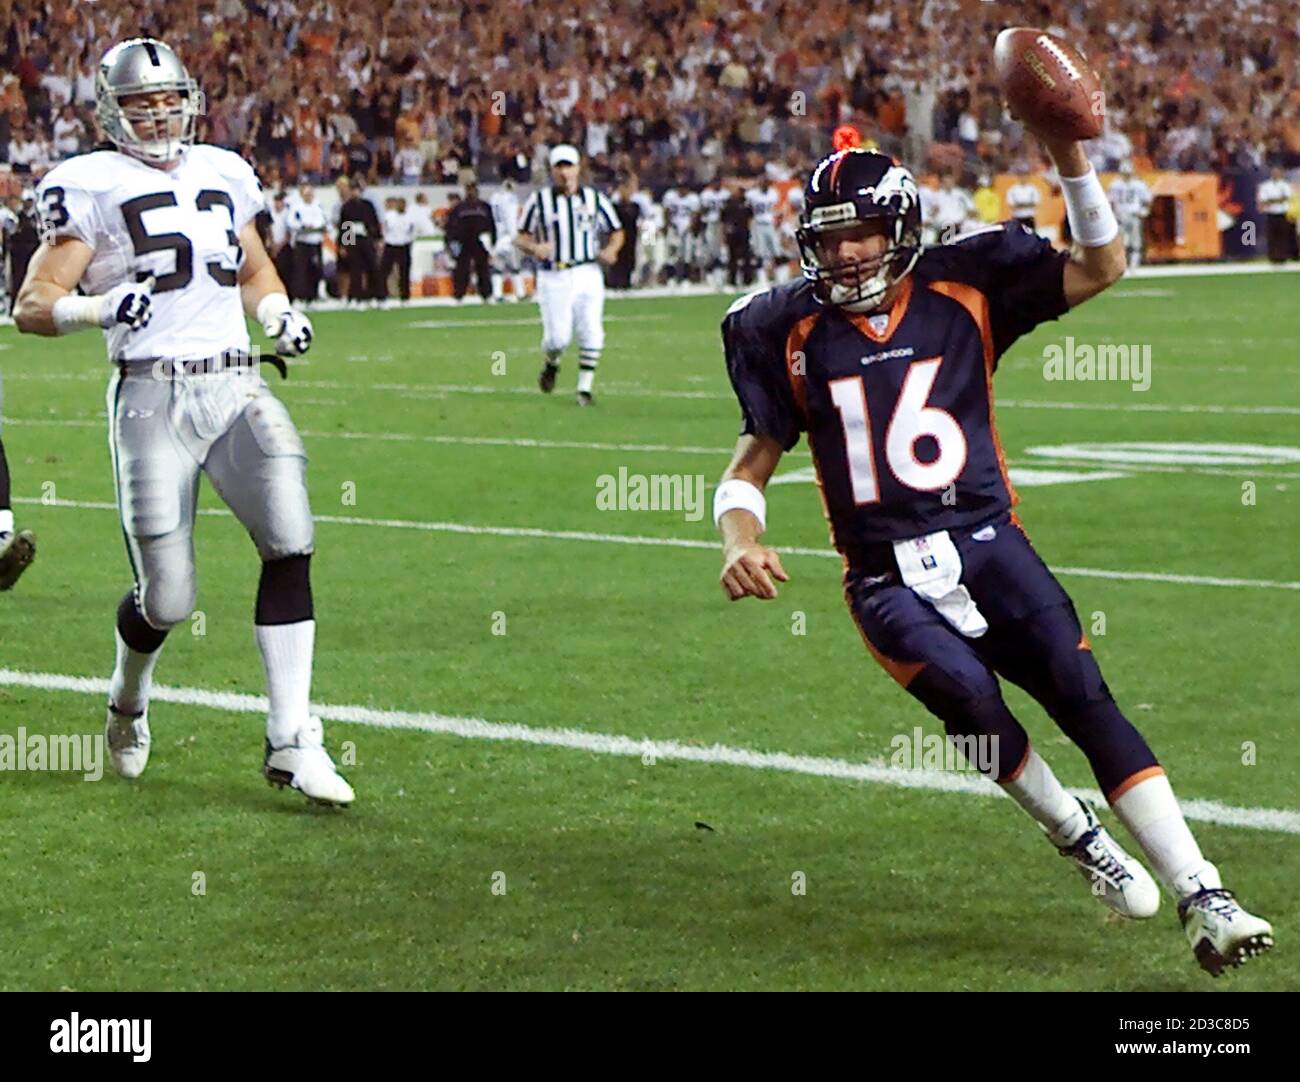 Denver Broncos Quarterback Jake Plummer läuft für eine sechs-Yard-Touchdown mit Oakland Raiders Linienhalter Bill Romanowski in Verfolgung im ersten Quartal in Denver 22. September 2003. Plummer feierte sein reguläres Saisondebüt als Broncos neuer Startquarter. REUTERS/Gary C. Caskey Stockfoto